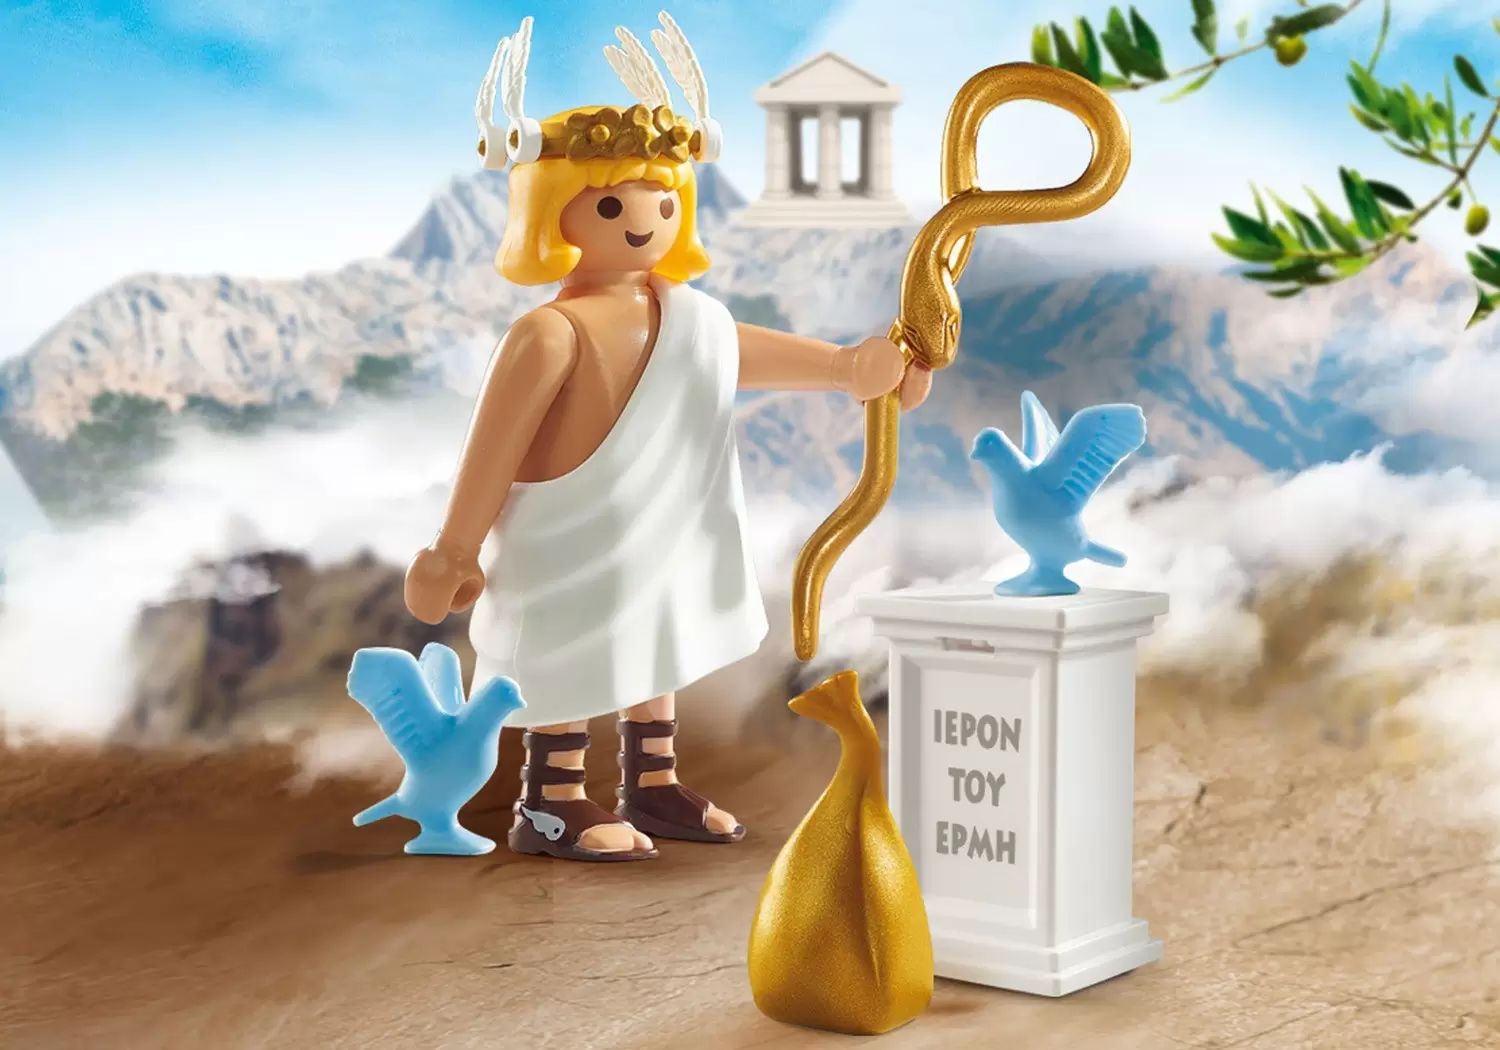 Playmobil Antic History - Hermes God